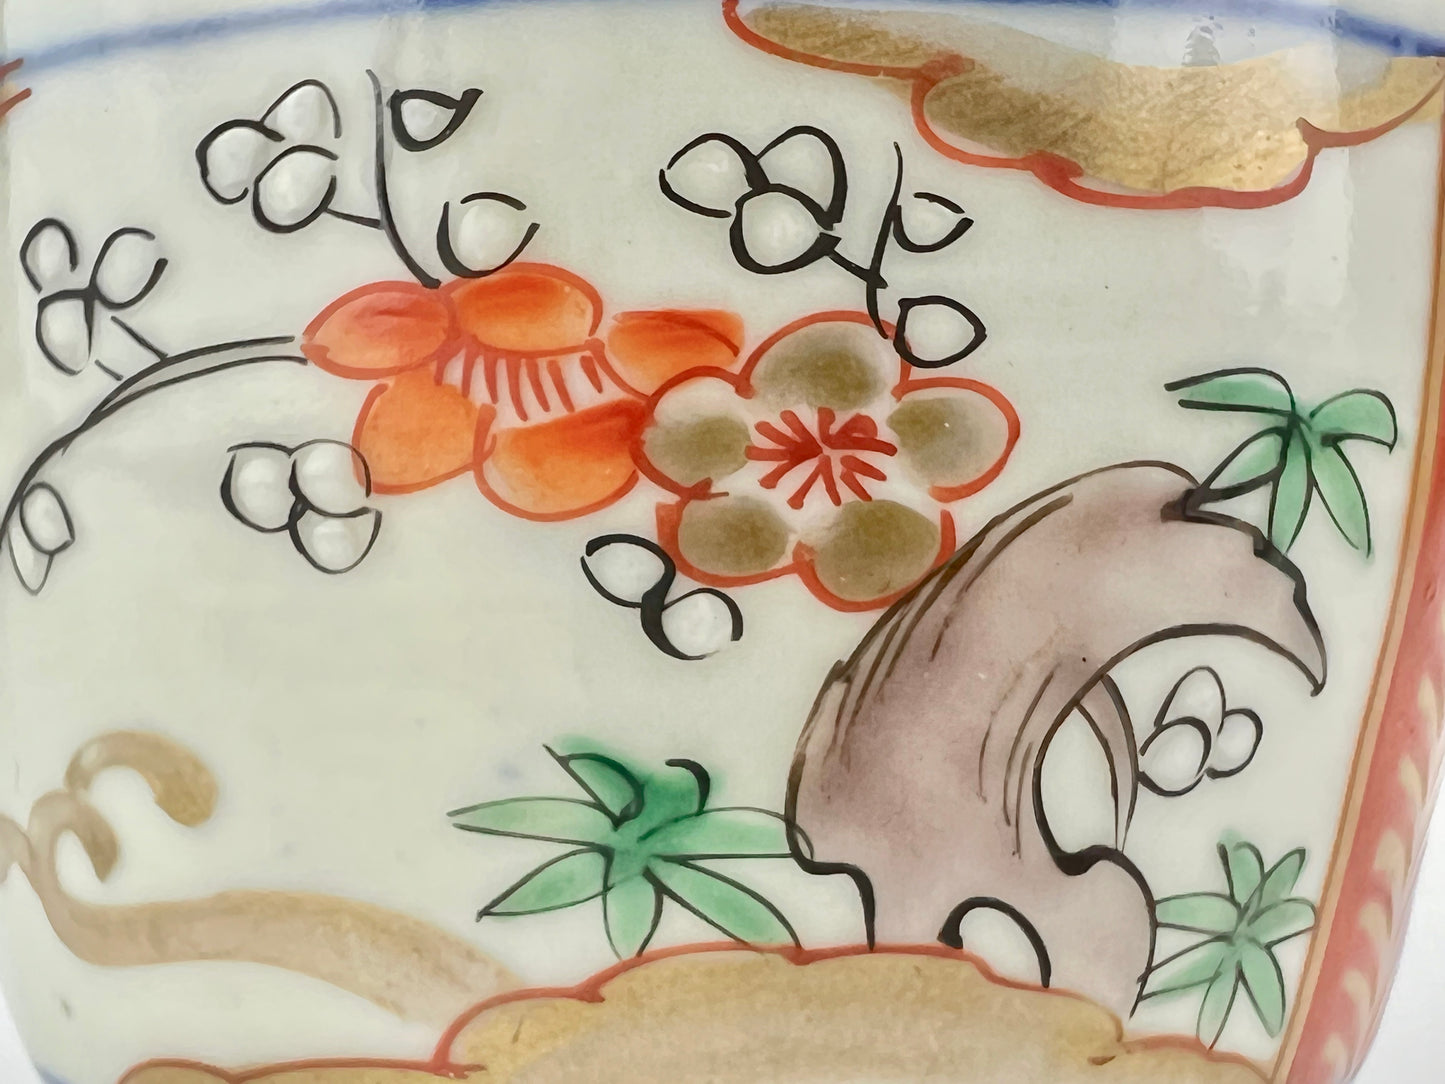 Antique Japanese Edo Era (c1850) Hand Painted Plum Blossom Ceramic Tea Cup 3.25"